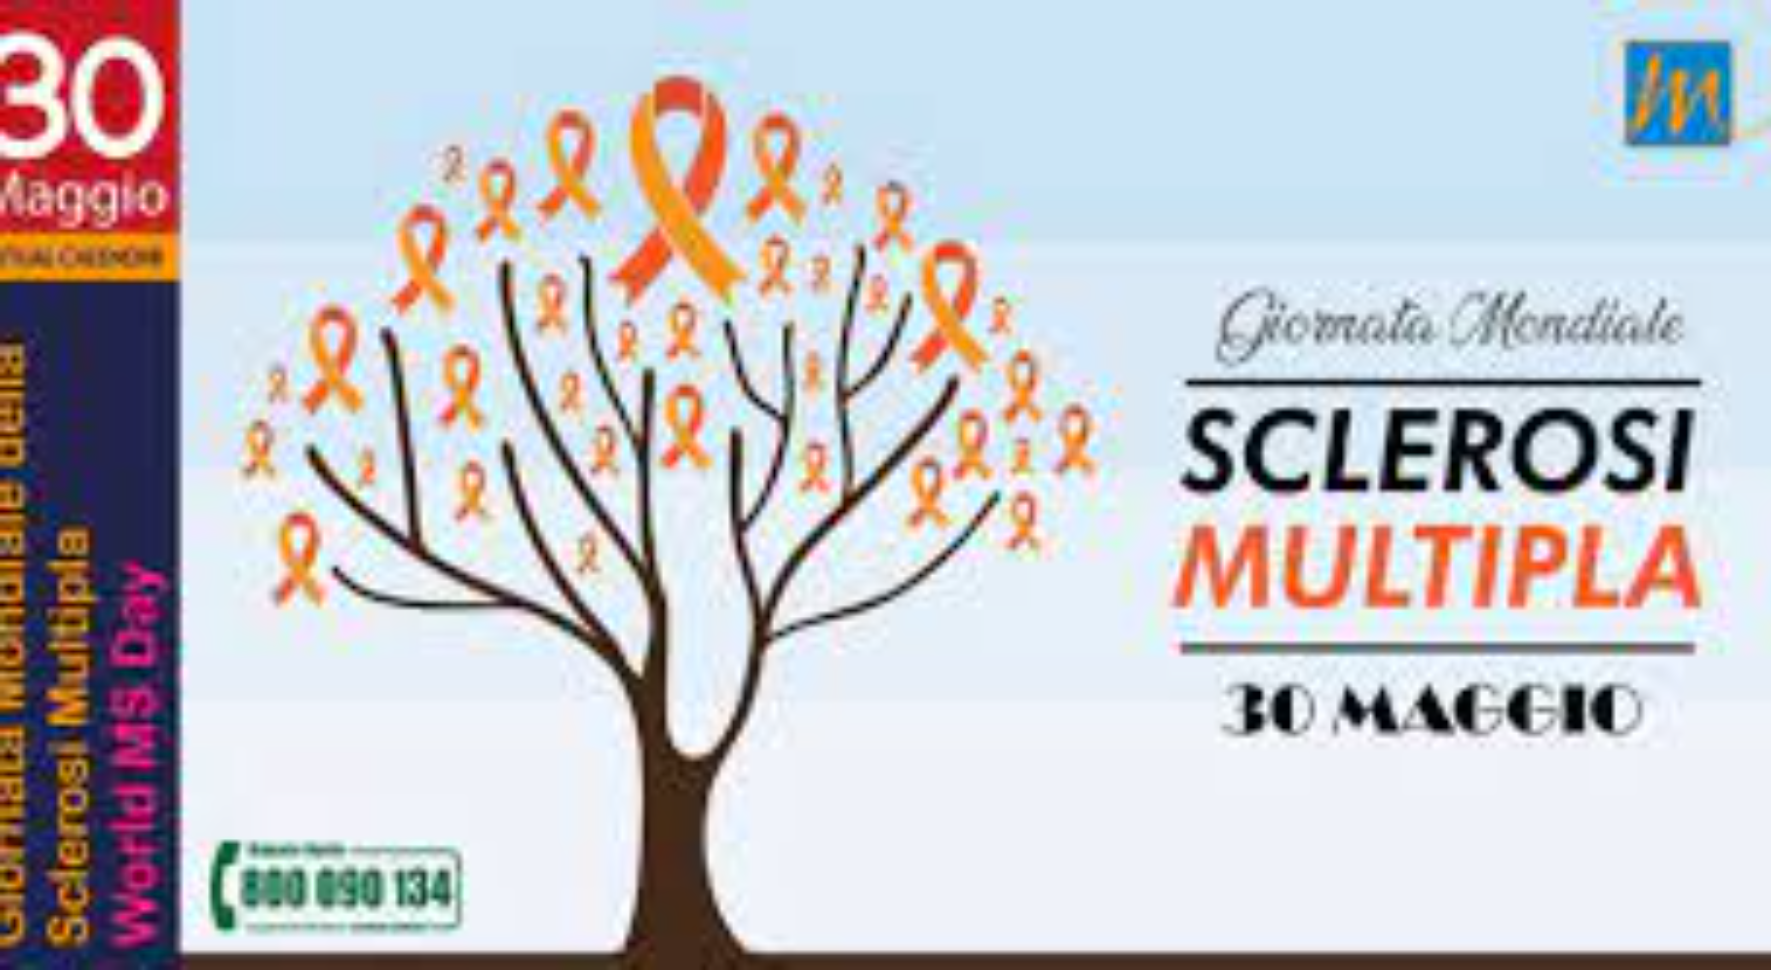 30 maggio Giornata Mondiale della Sclerosi Multipla. La nota di Sergio Cavoli, presidente Asms Sardegna